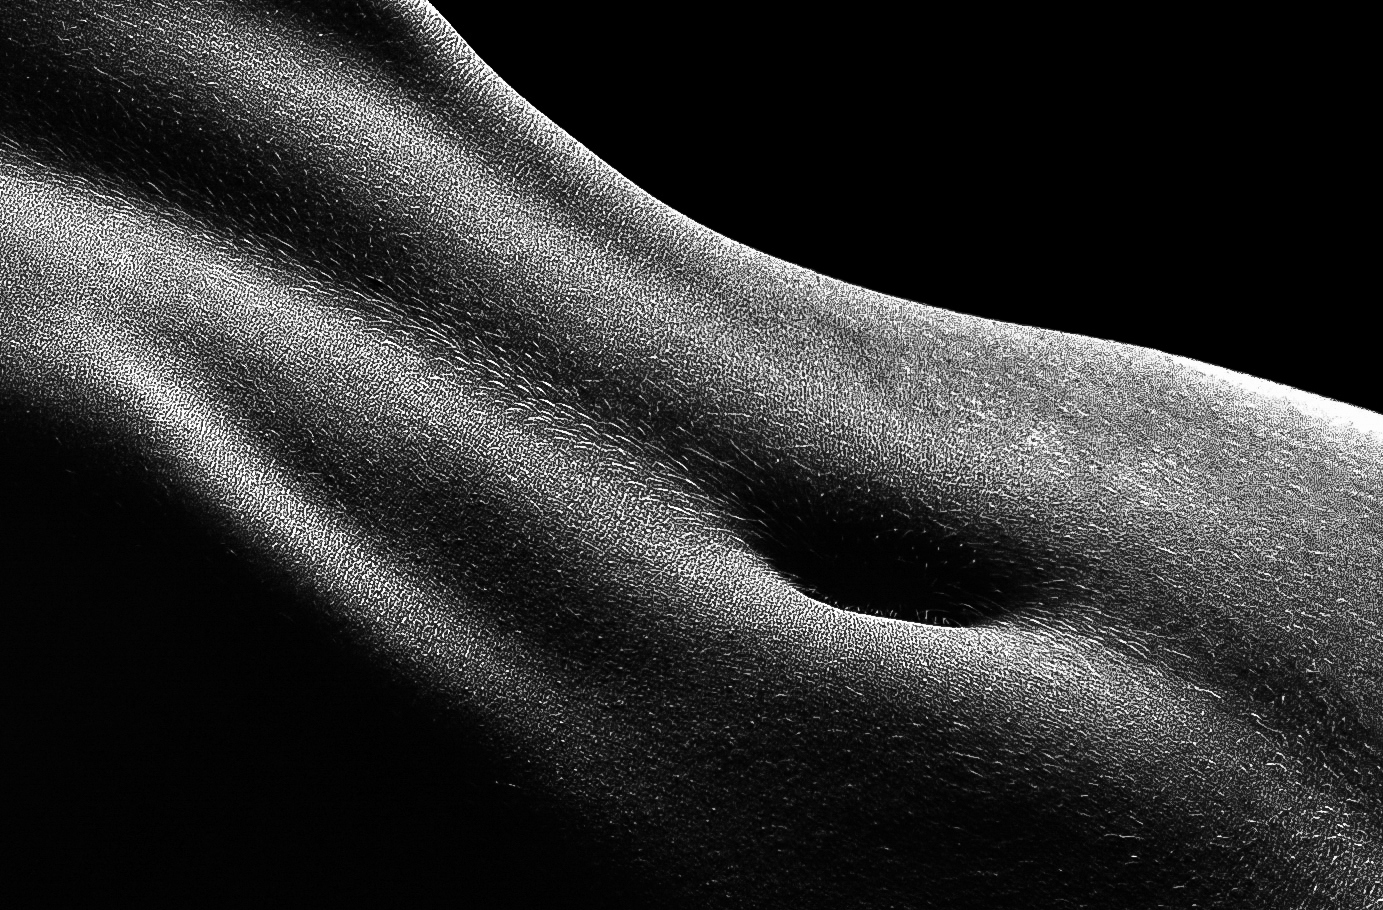 Körperlandschaften - Aktfotografie in schwarz-weiß